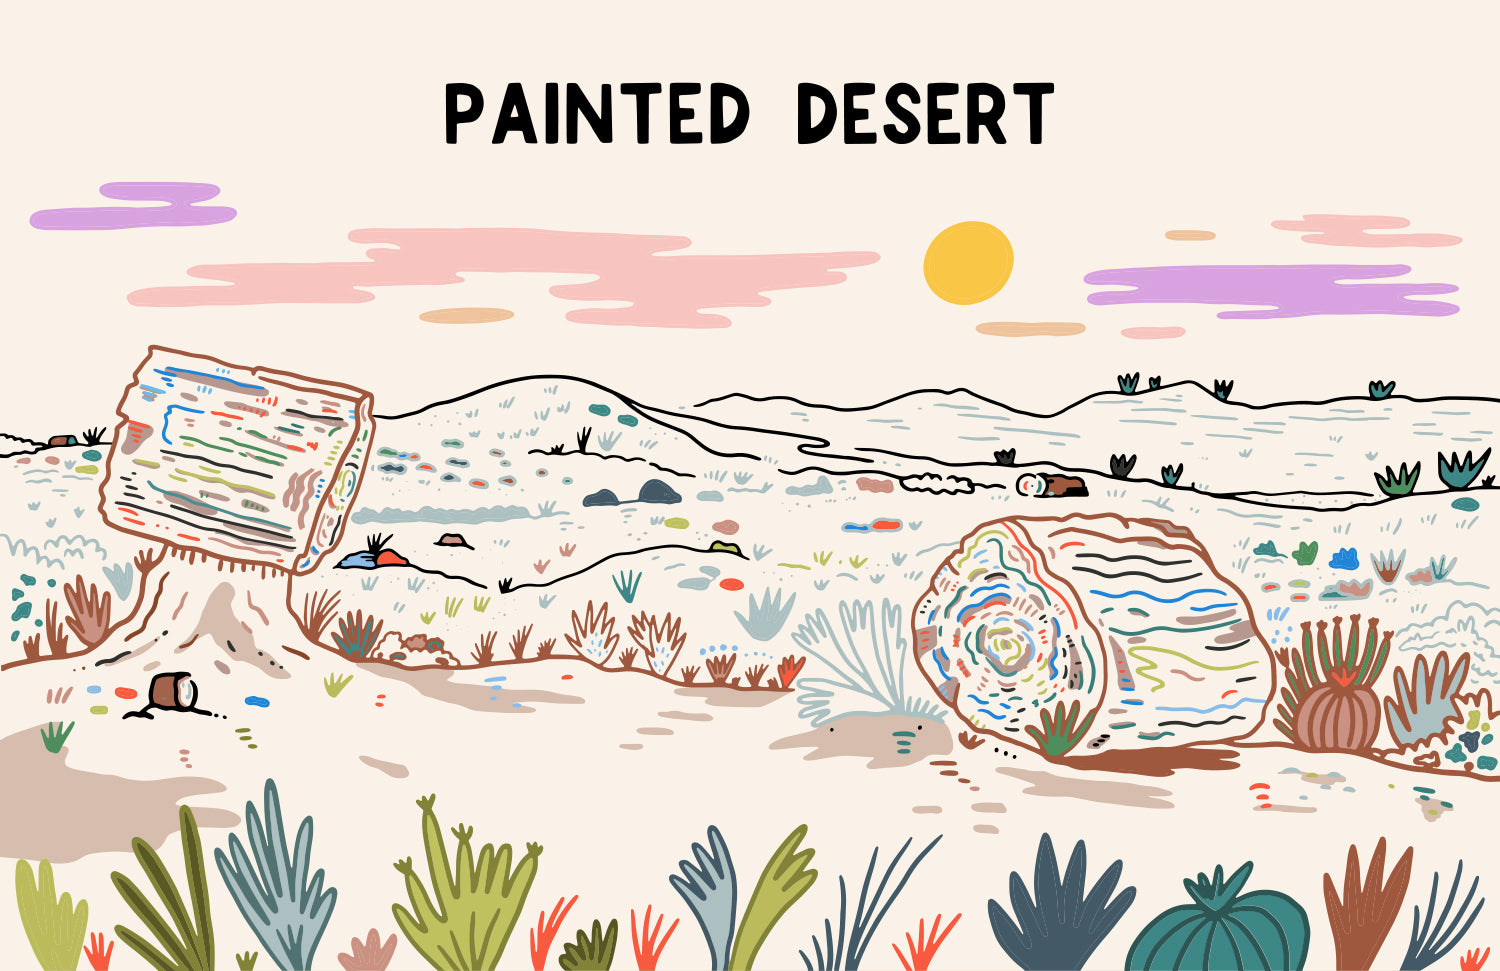 PAINTED DESERT